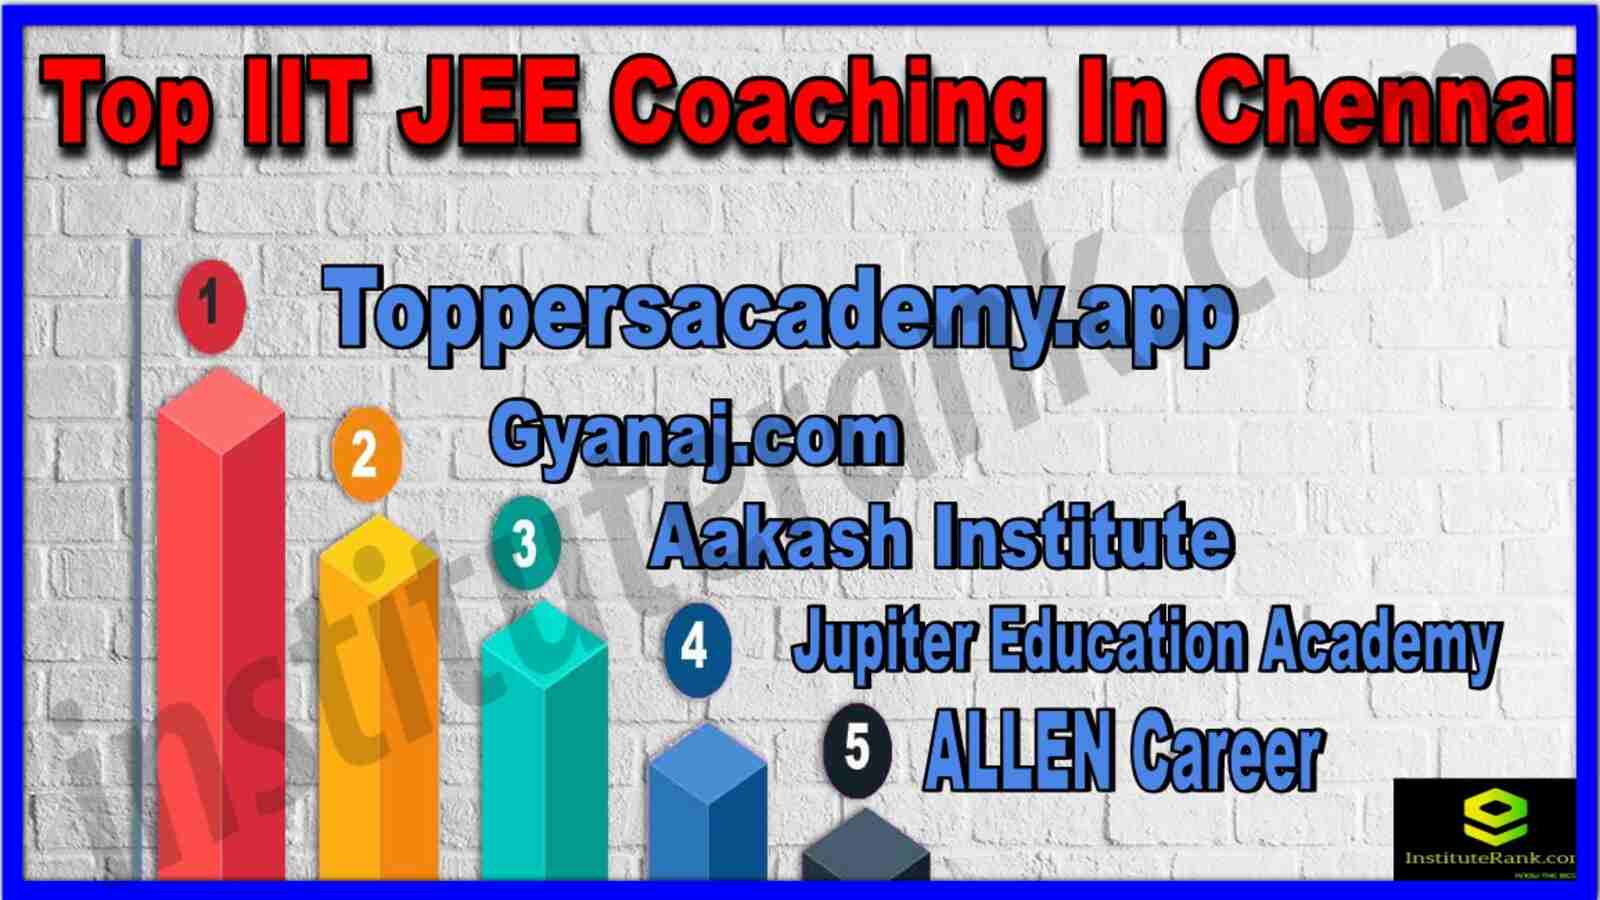 Top 10 IIT JEE Coaching in Chennai